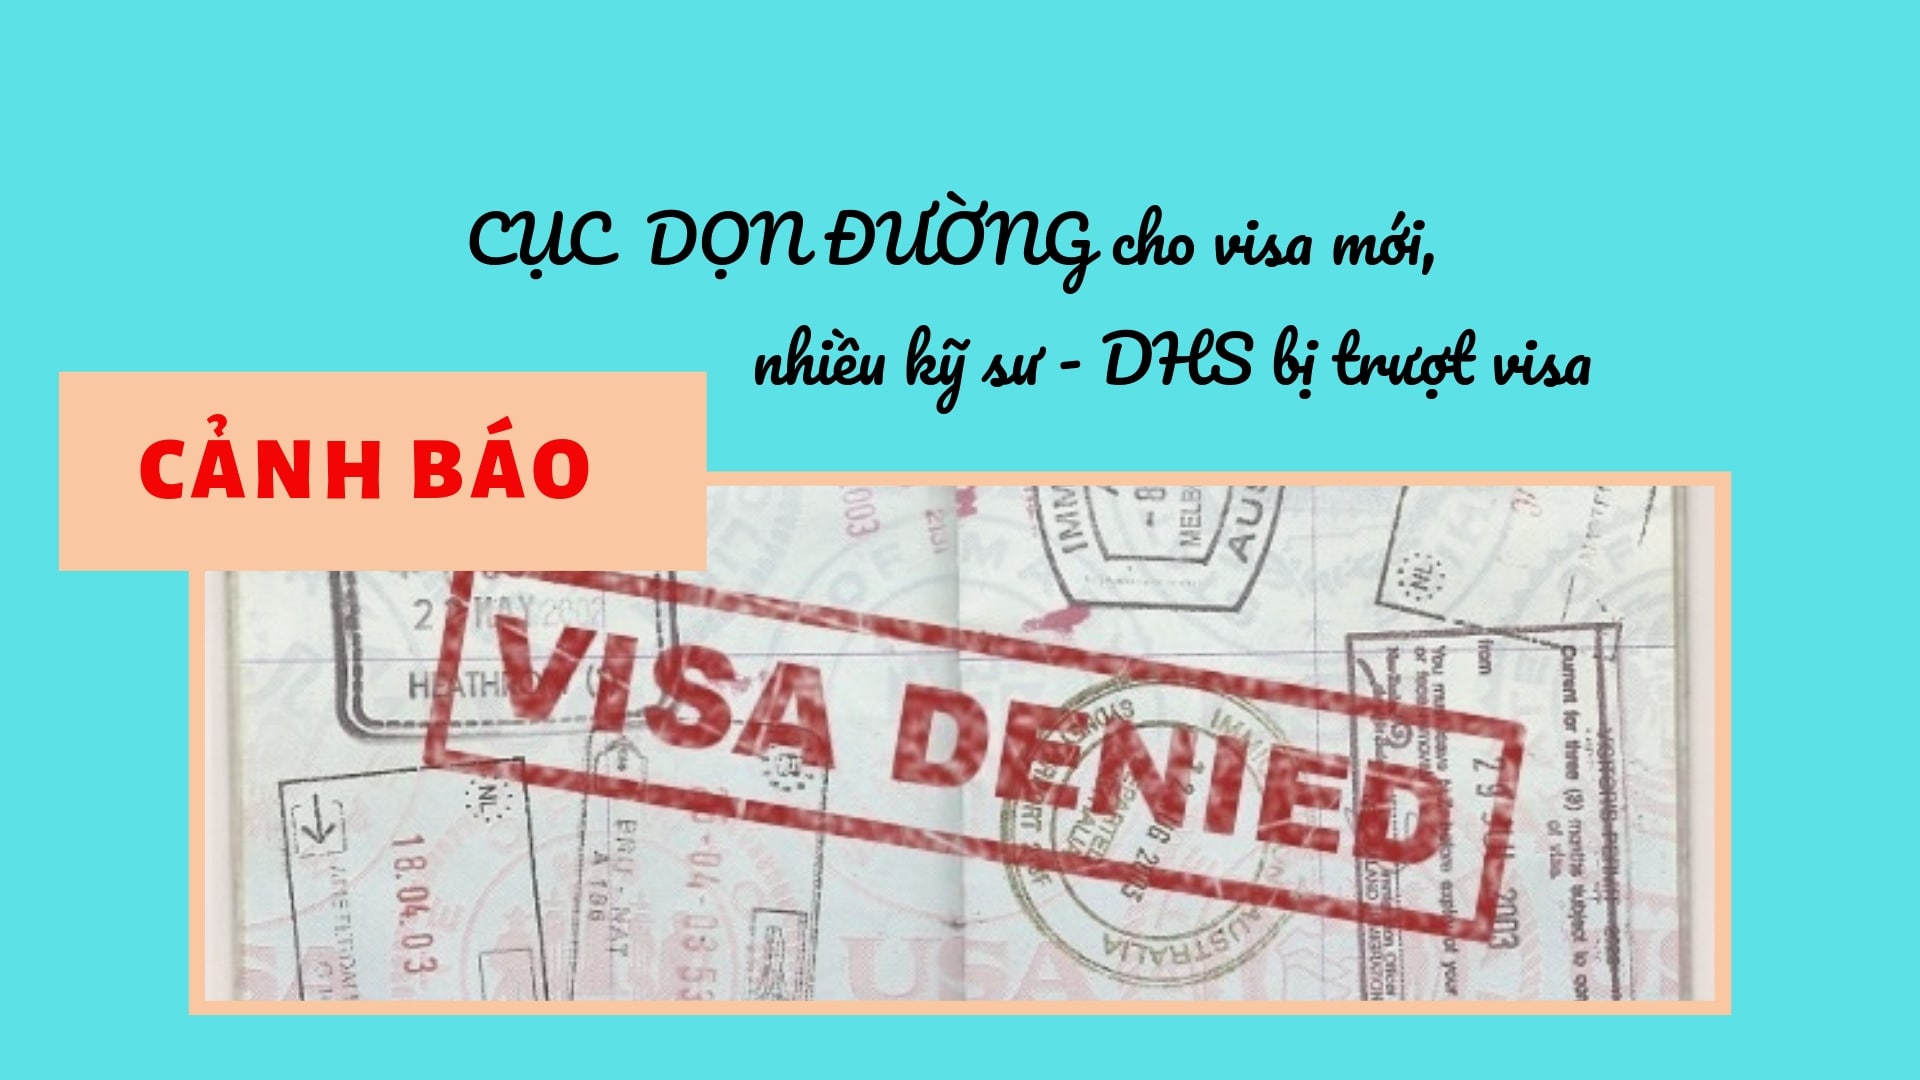 CẢNH BÁO Cục đánh trượt visa kỹ sư, DHS để DỌN ĐƯỜNG cho visa mới